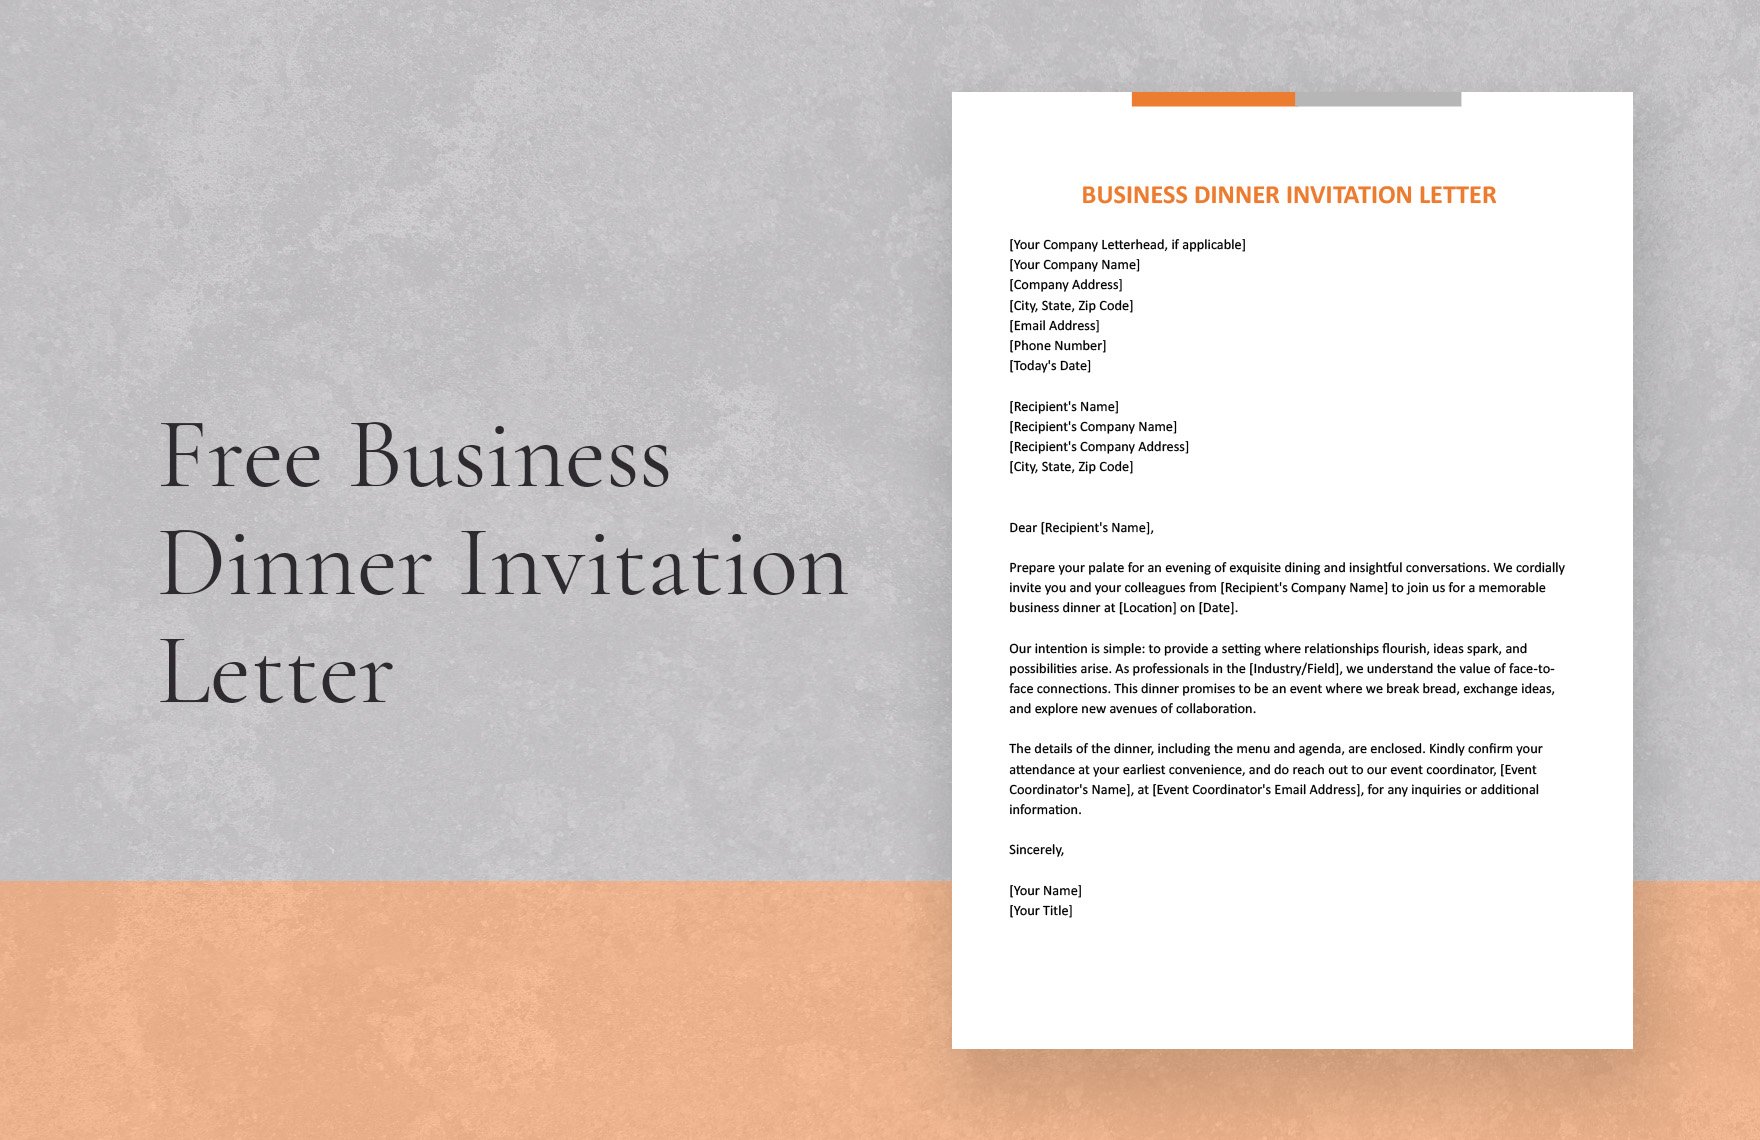 Business Dinner Invitation Letter